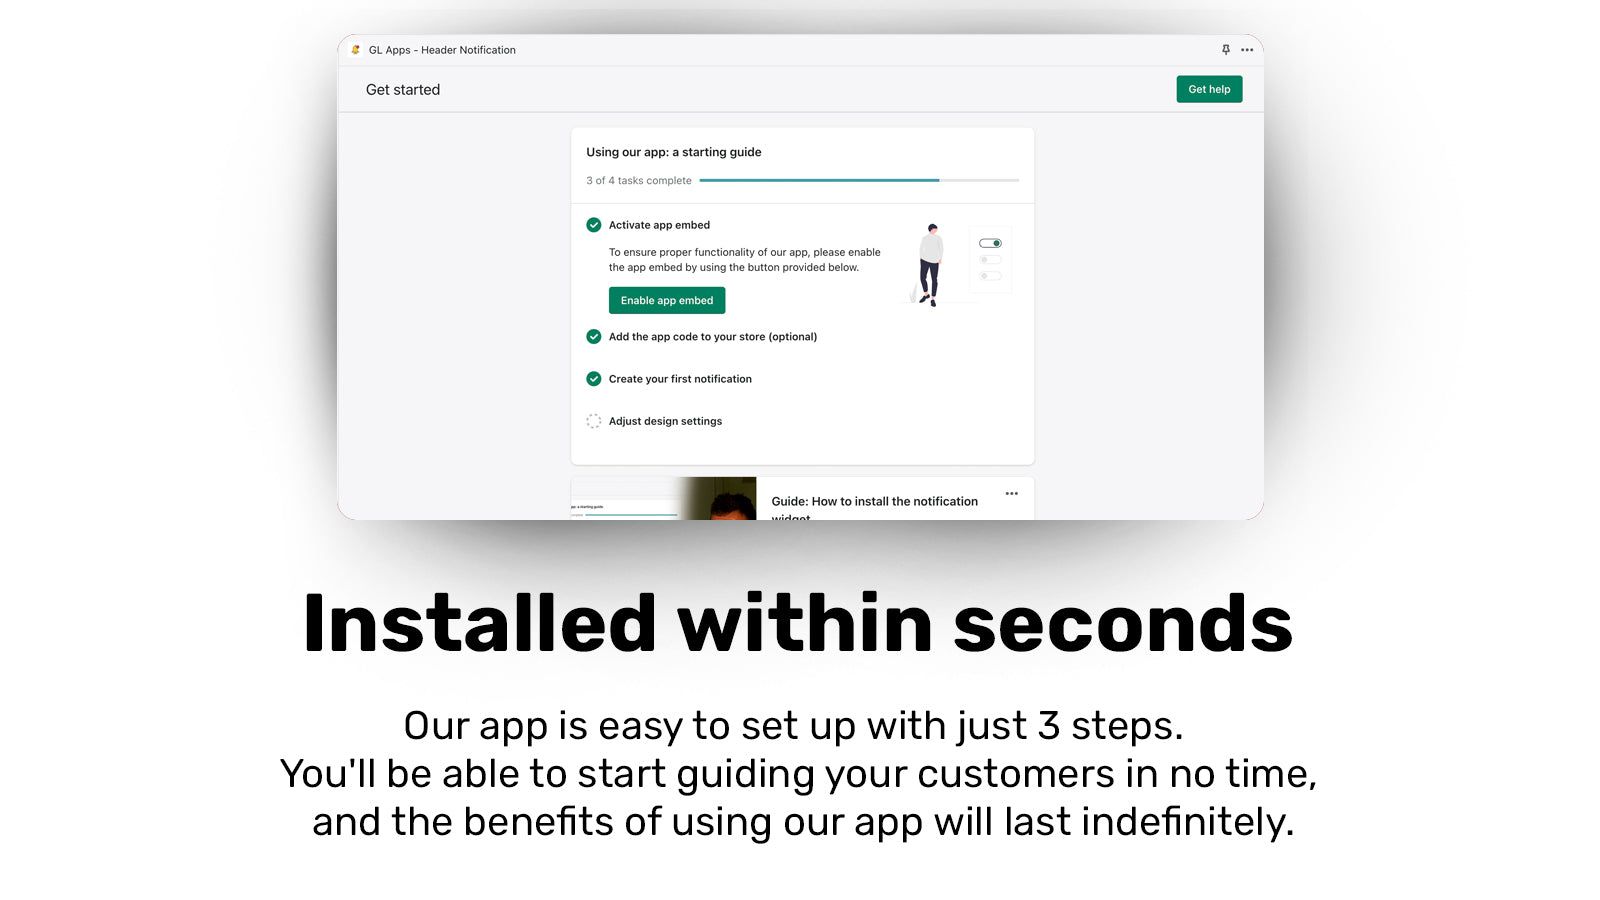 Shopify app install - 3 steps